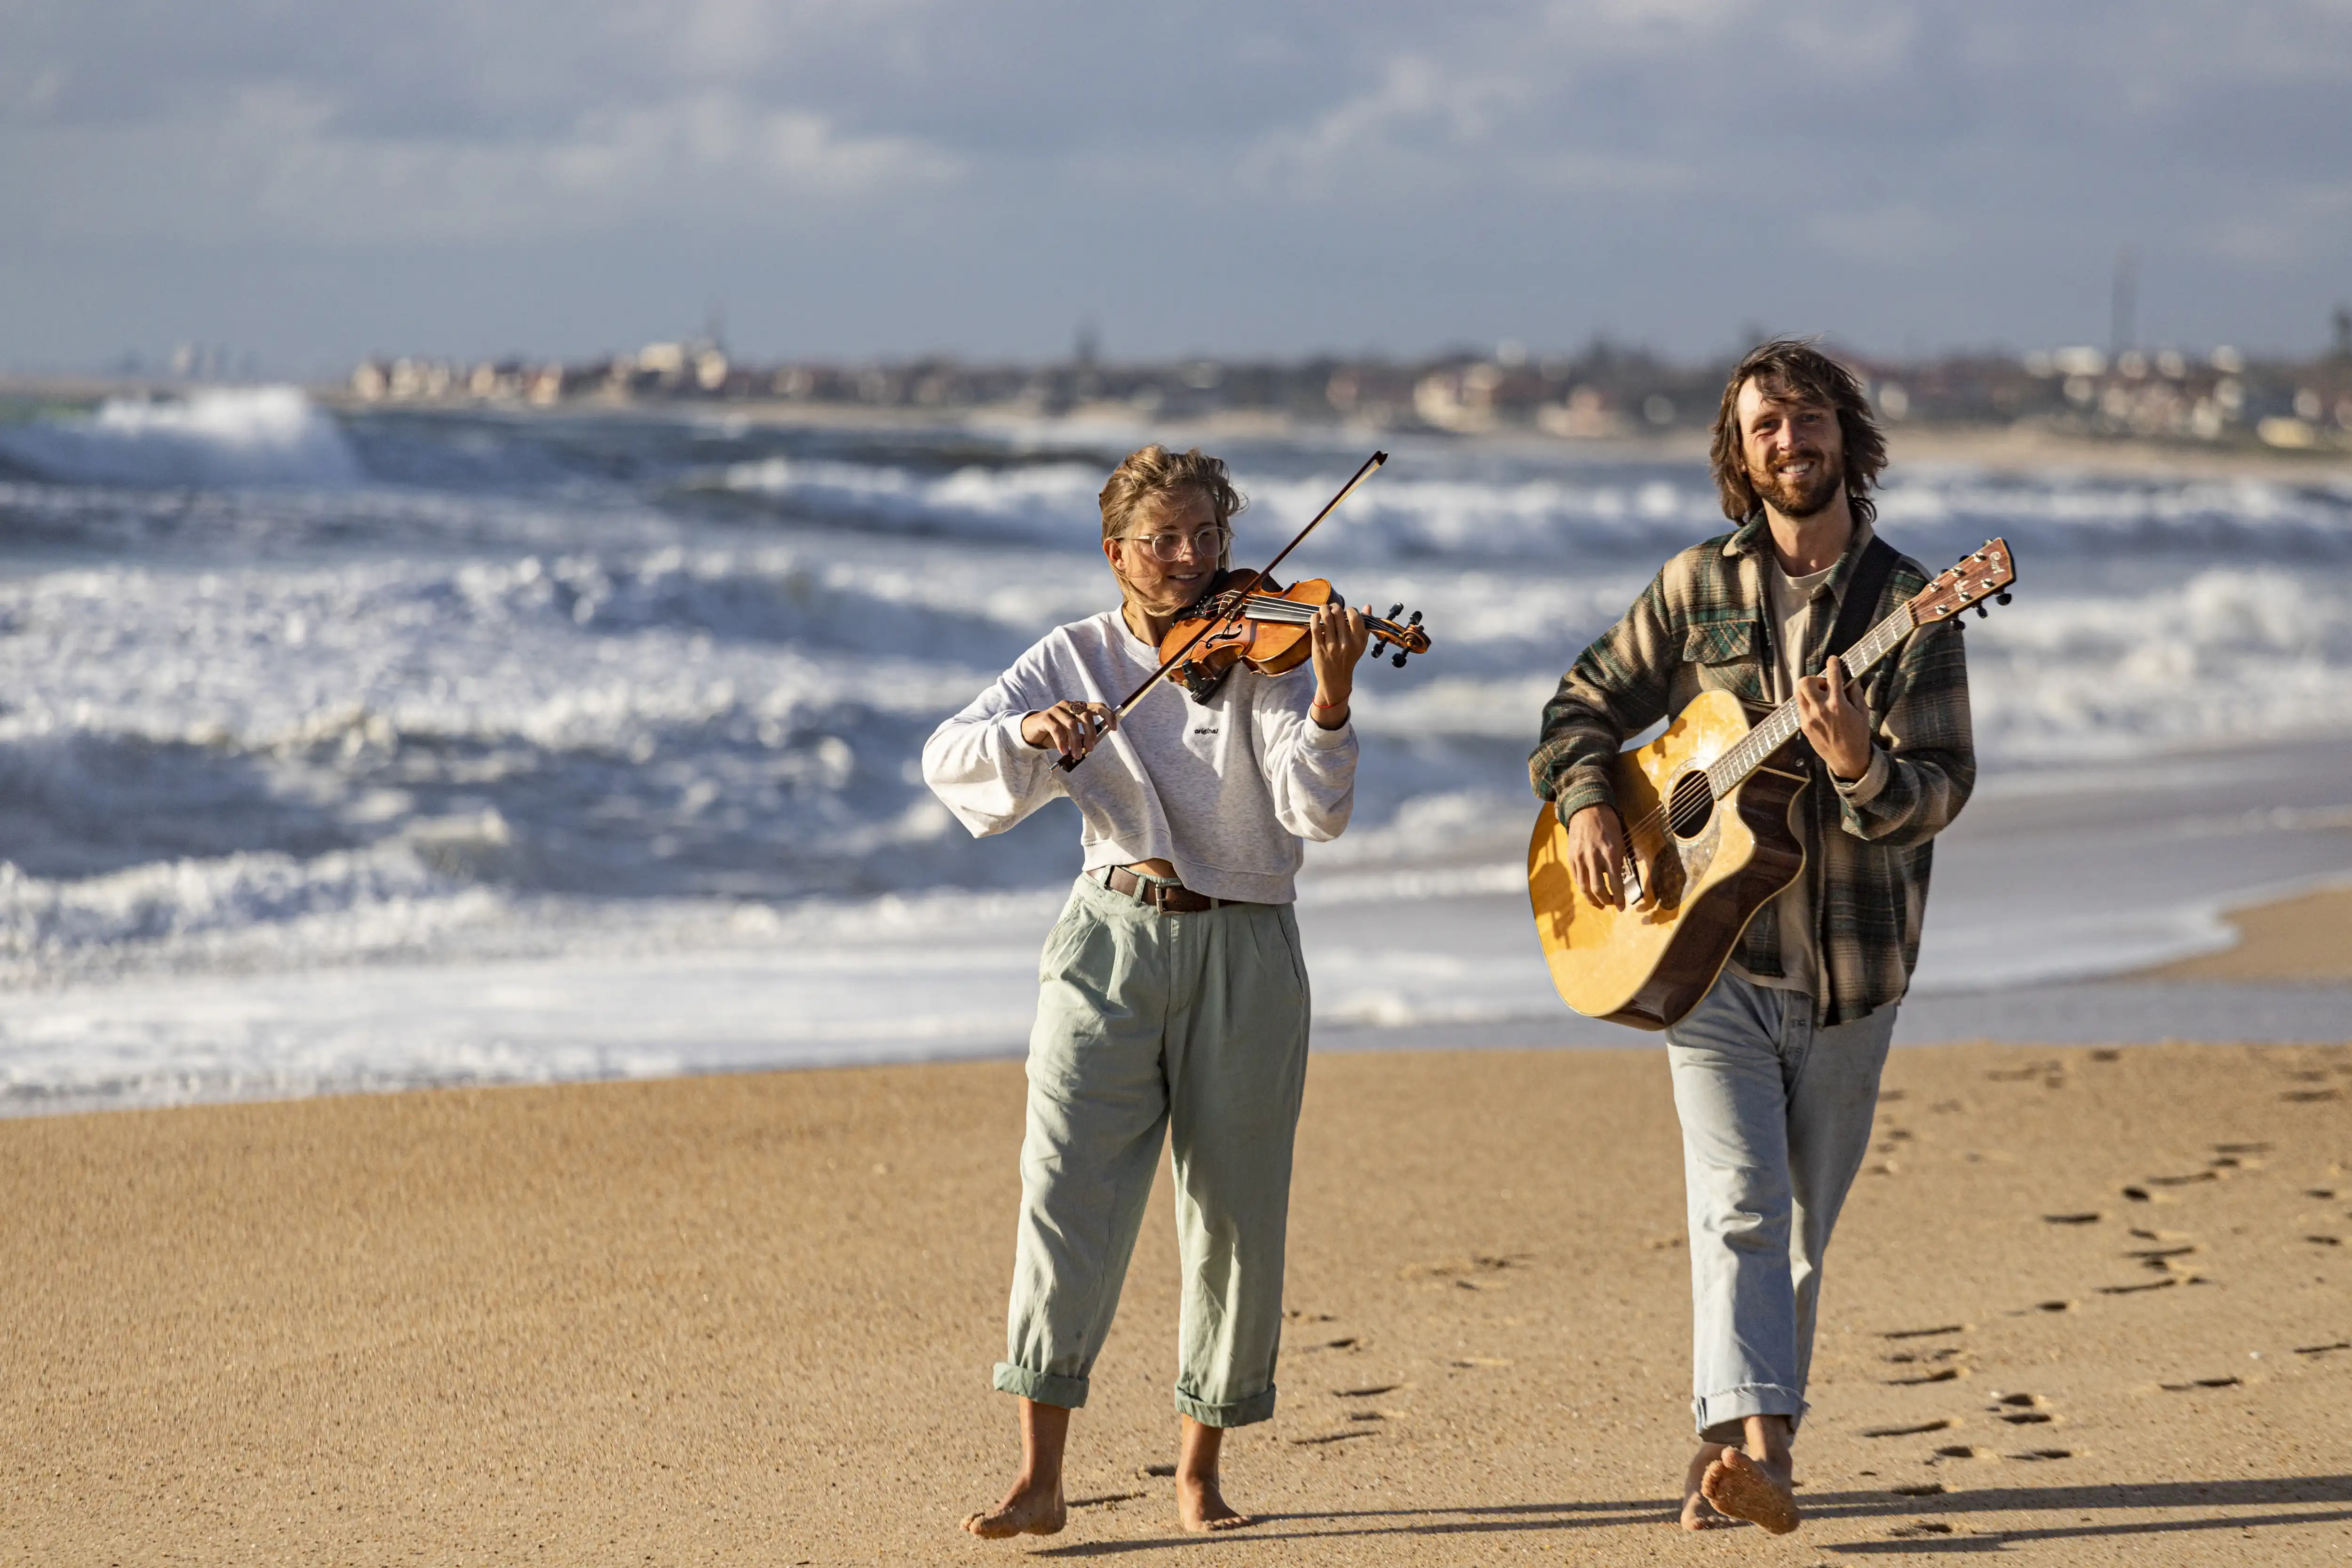 Anka und René laufen am Strand und spielen auf der Geige und auf der Gitarre.
        Die Sonne scheint und im Hintergrund brechen weiße Wellen.